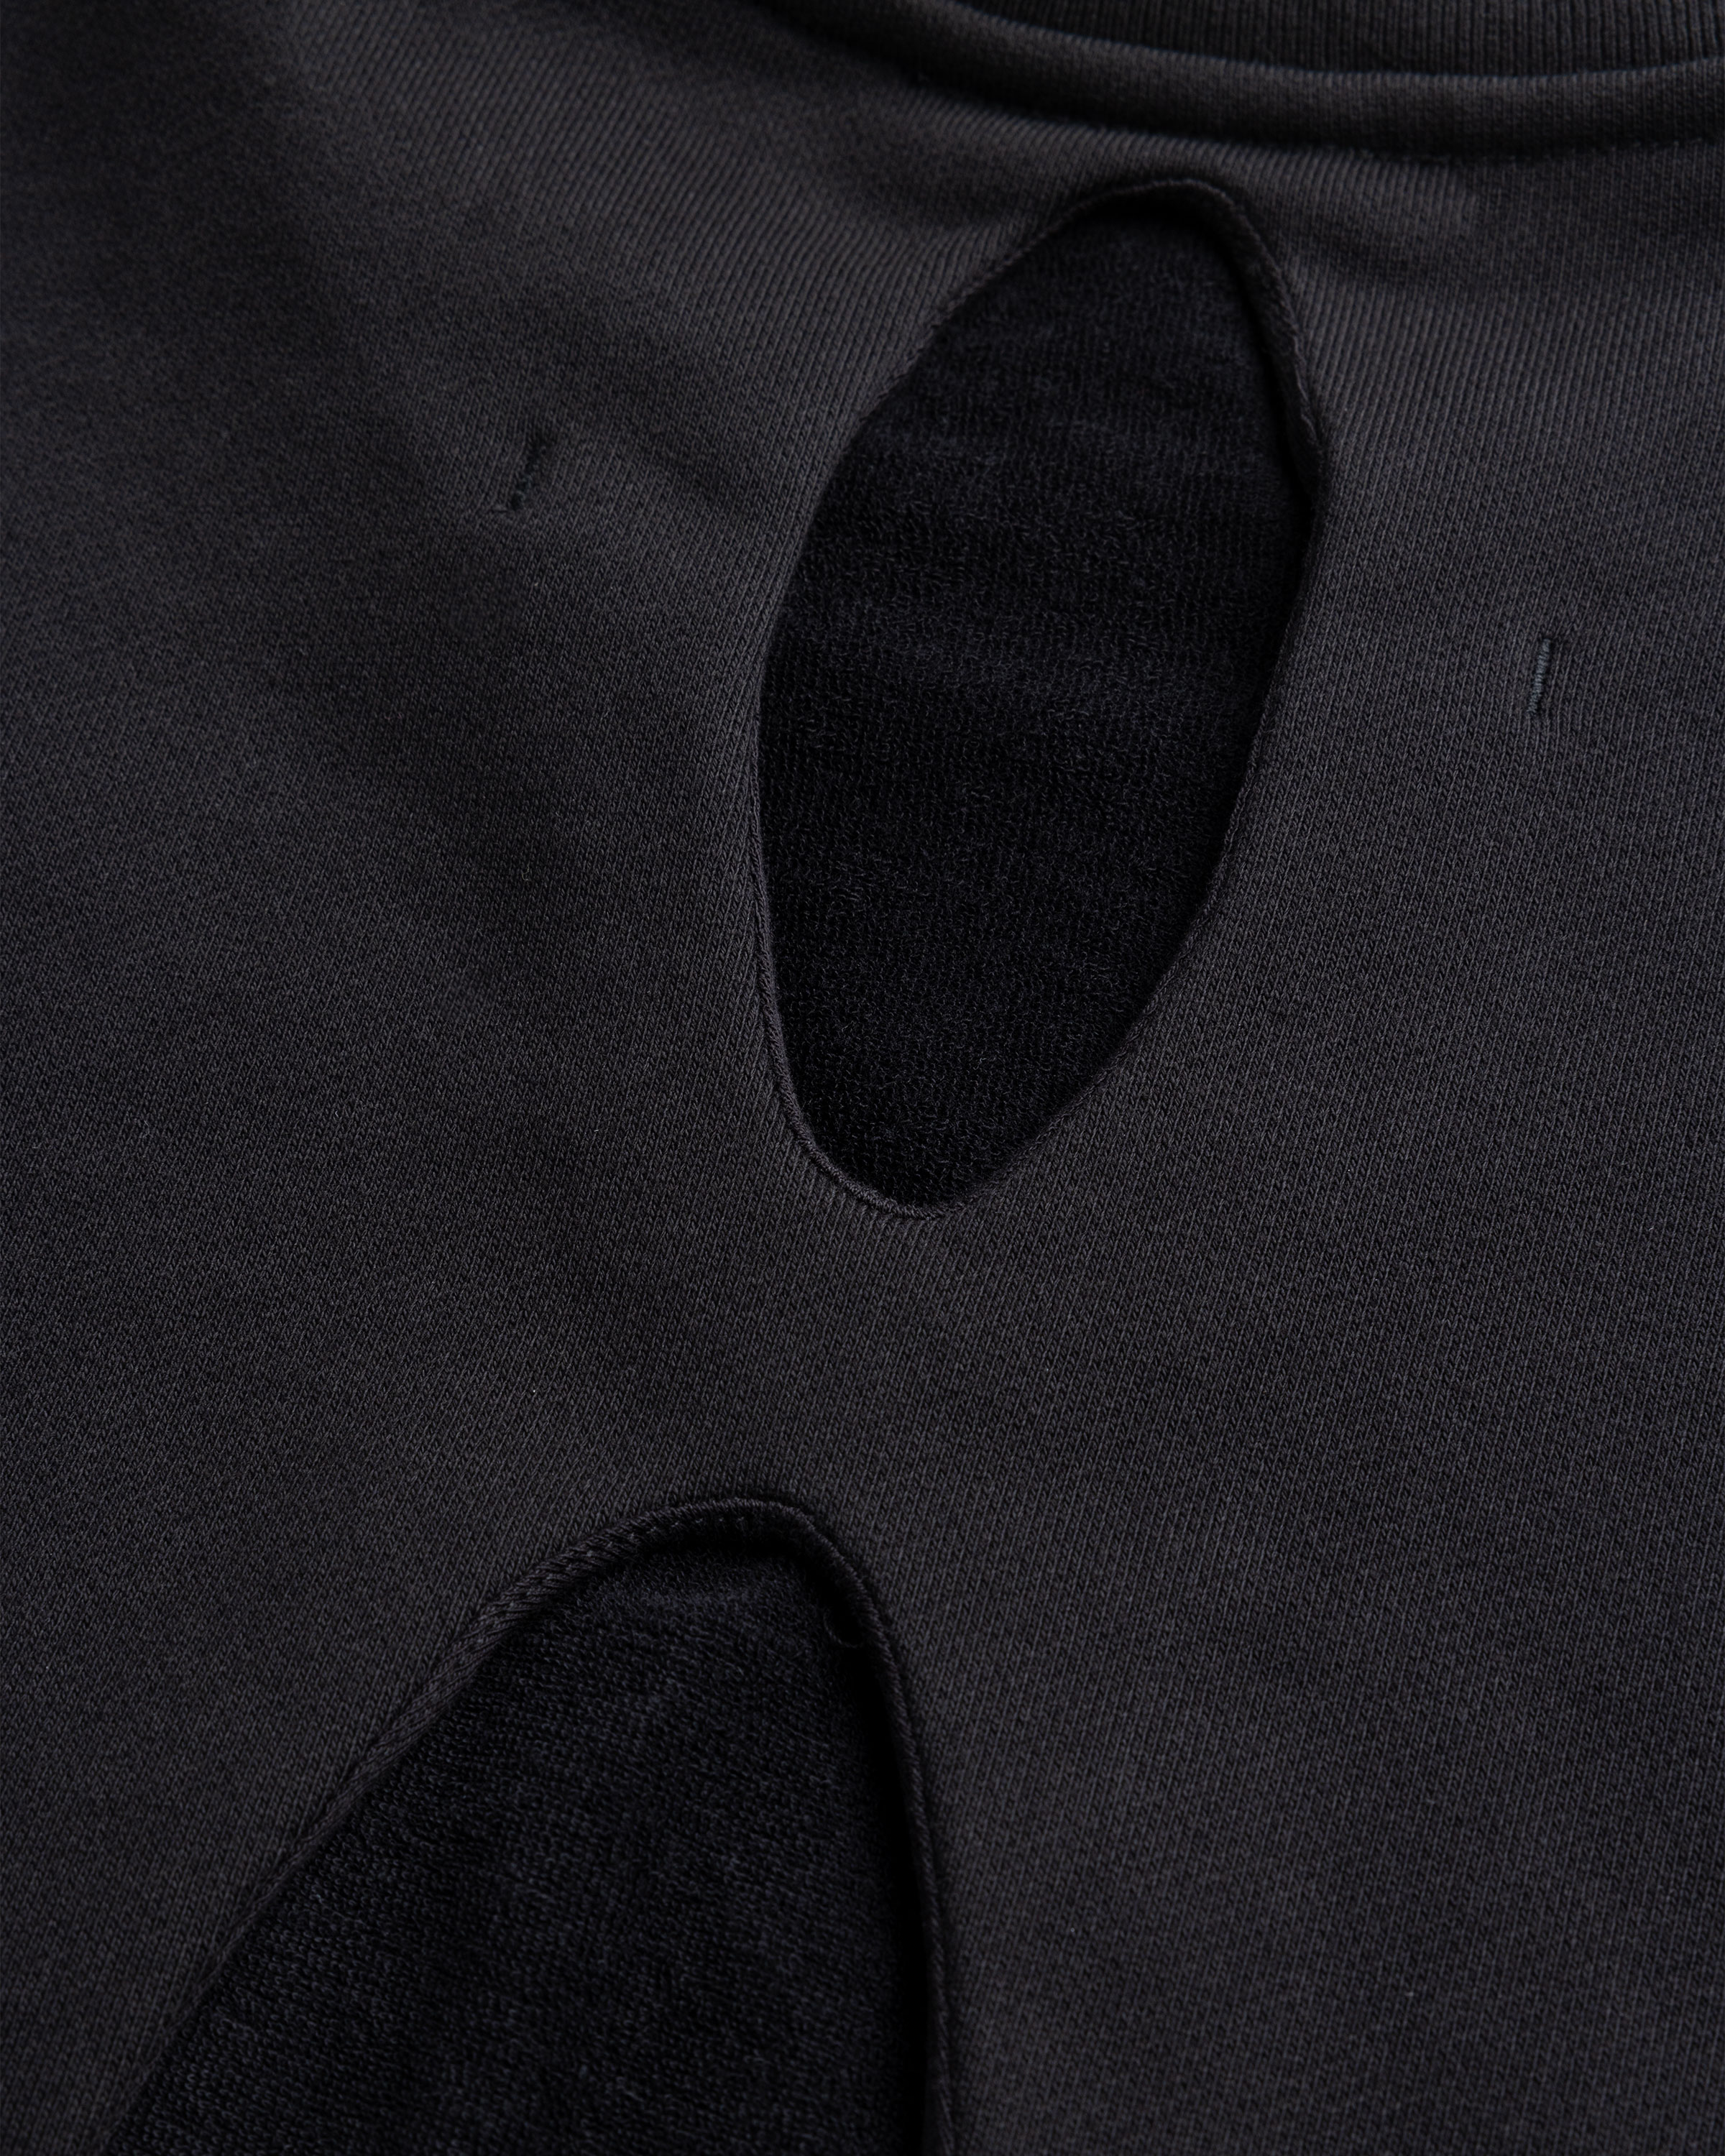 _J.L-A.L_ – Grown On Oval Jumper Black - Knitwear - Black - Image 7